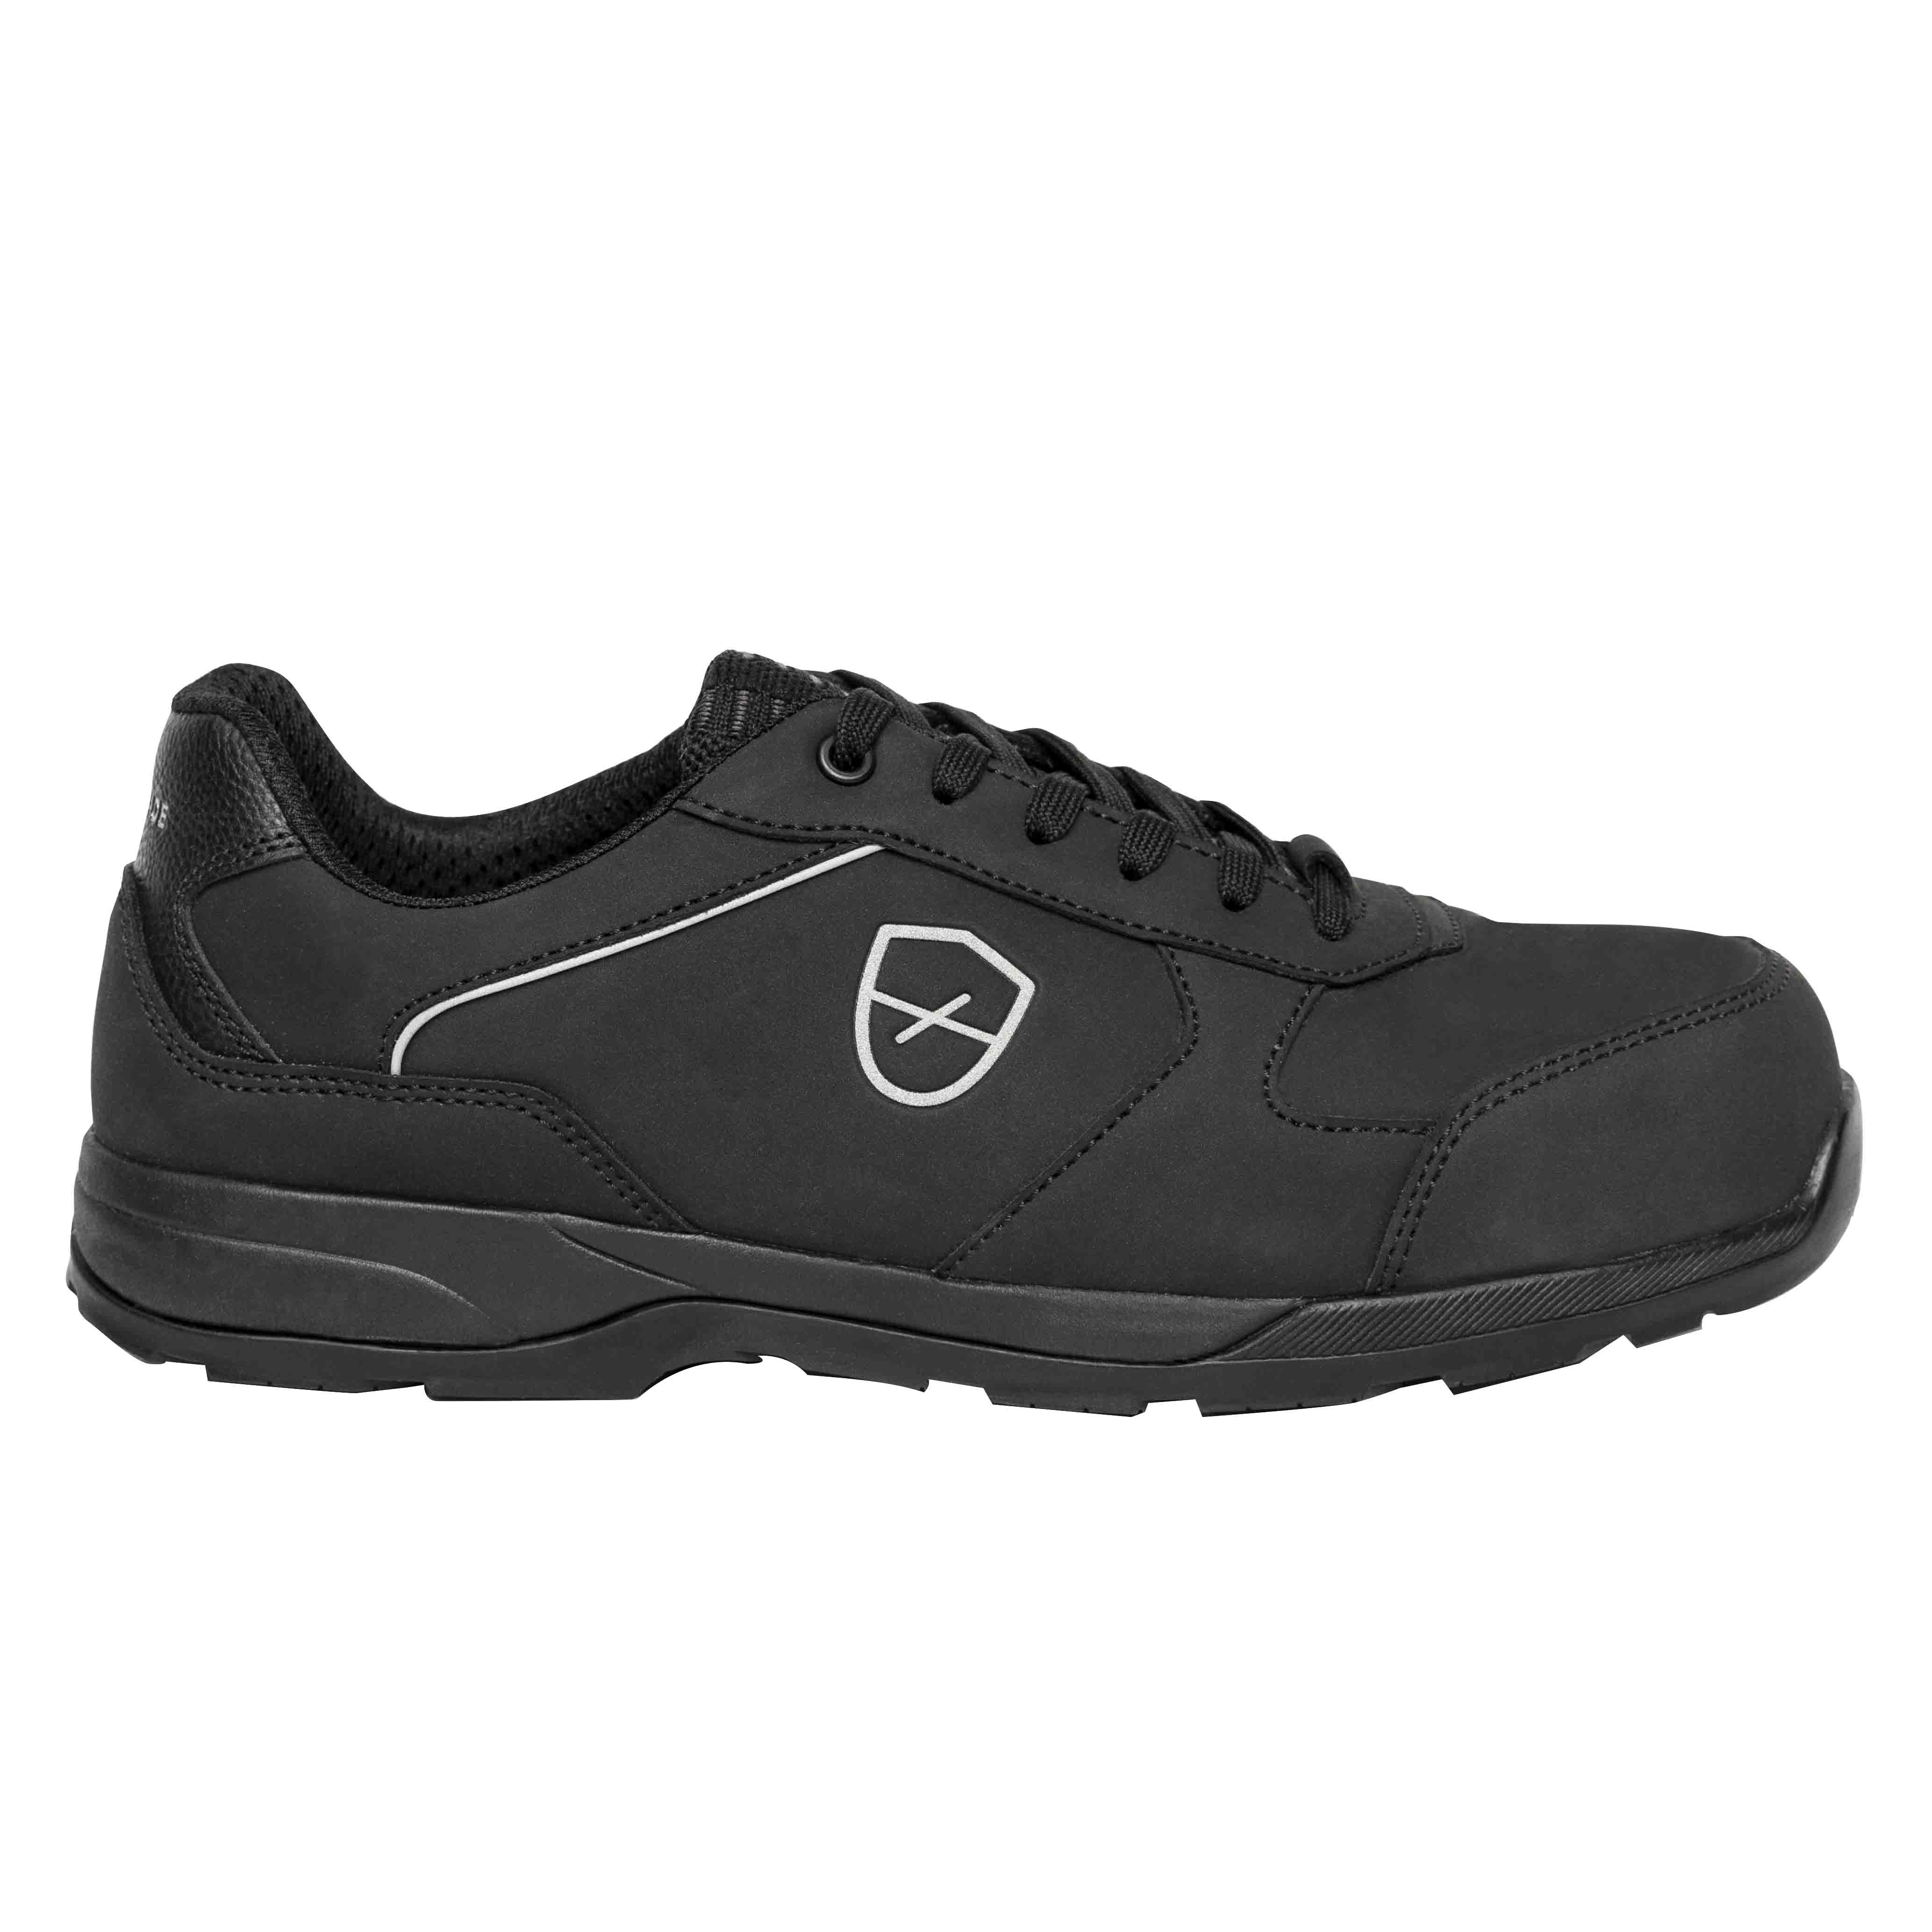 Chaussures de sécurité basses Romane Mixte, T 42 Noir, Antistatiques